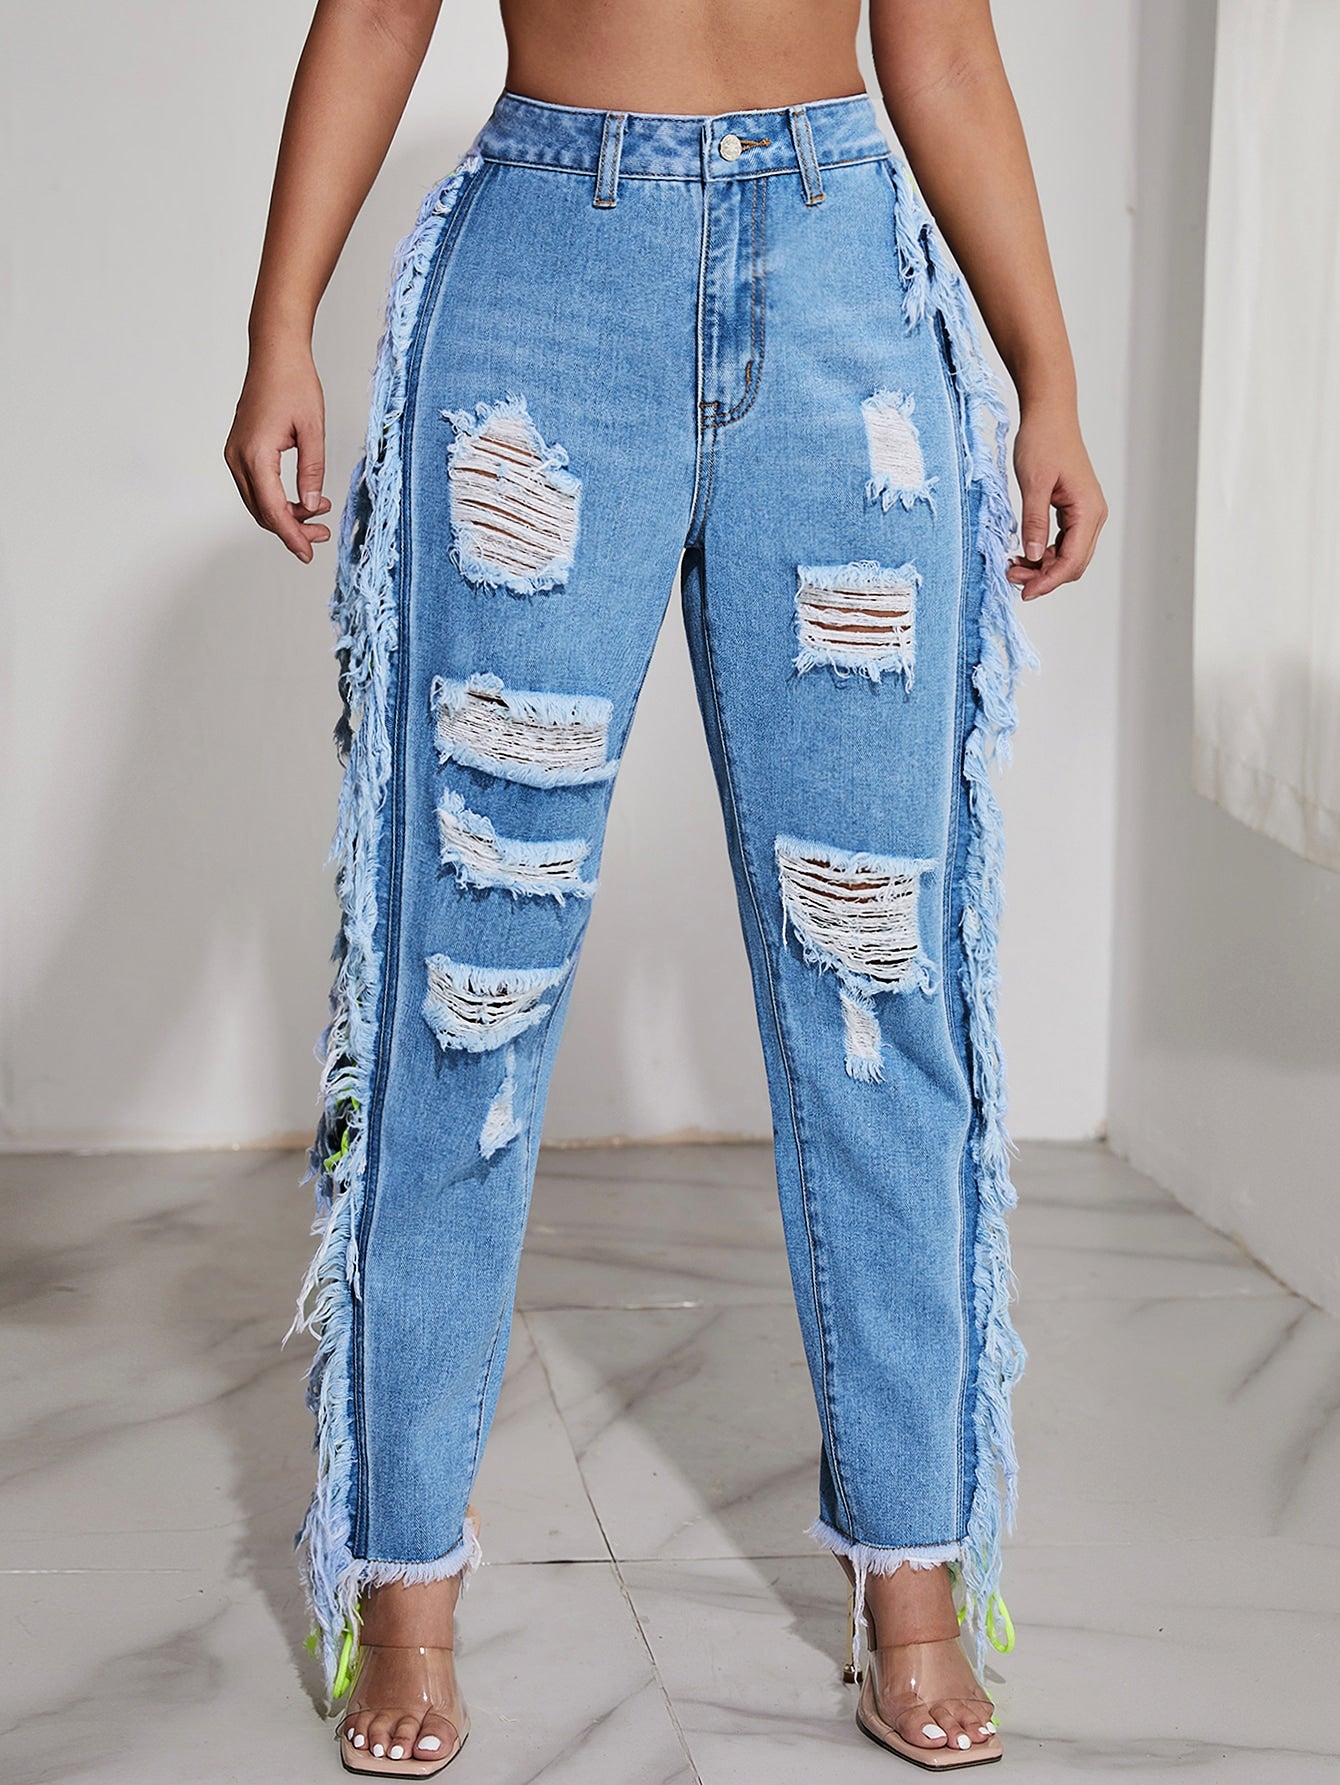 Women Jeans Supplier